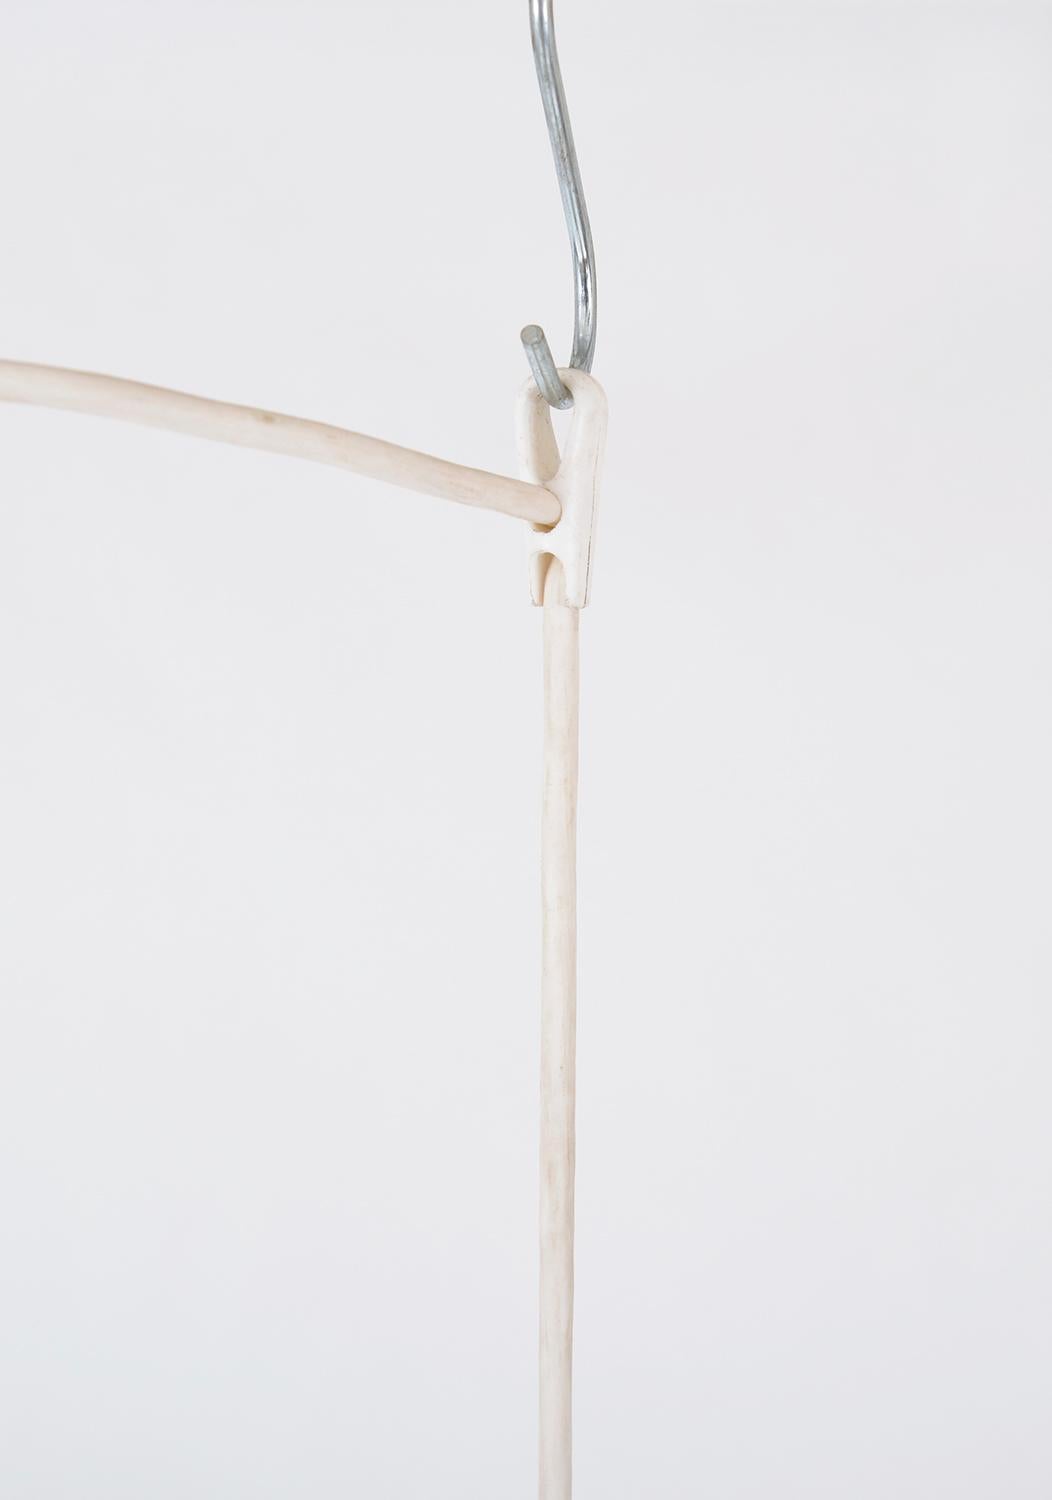 1960s Louis Poulsen PH Kontrast Pendant Lamp by Poul Henningsen Denmark For Sale 1